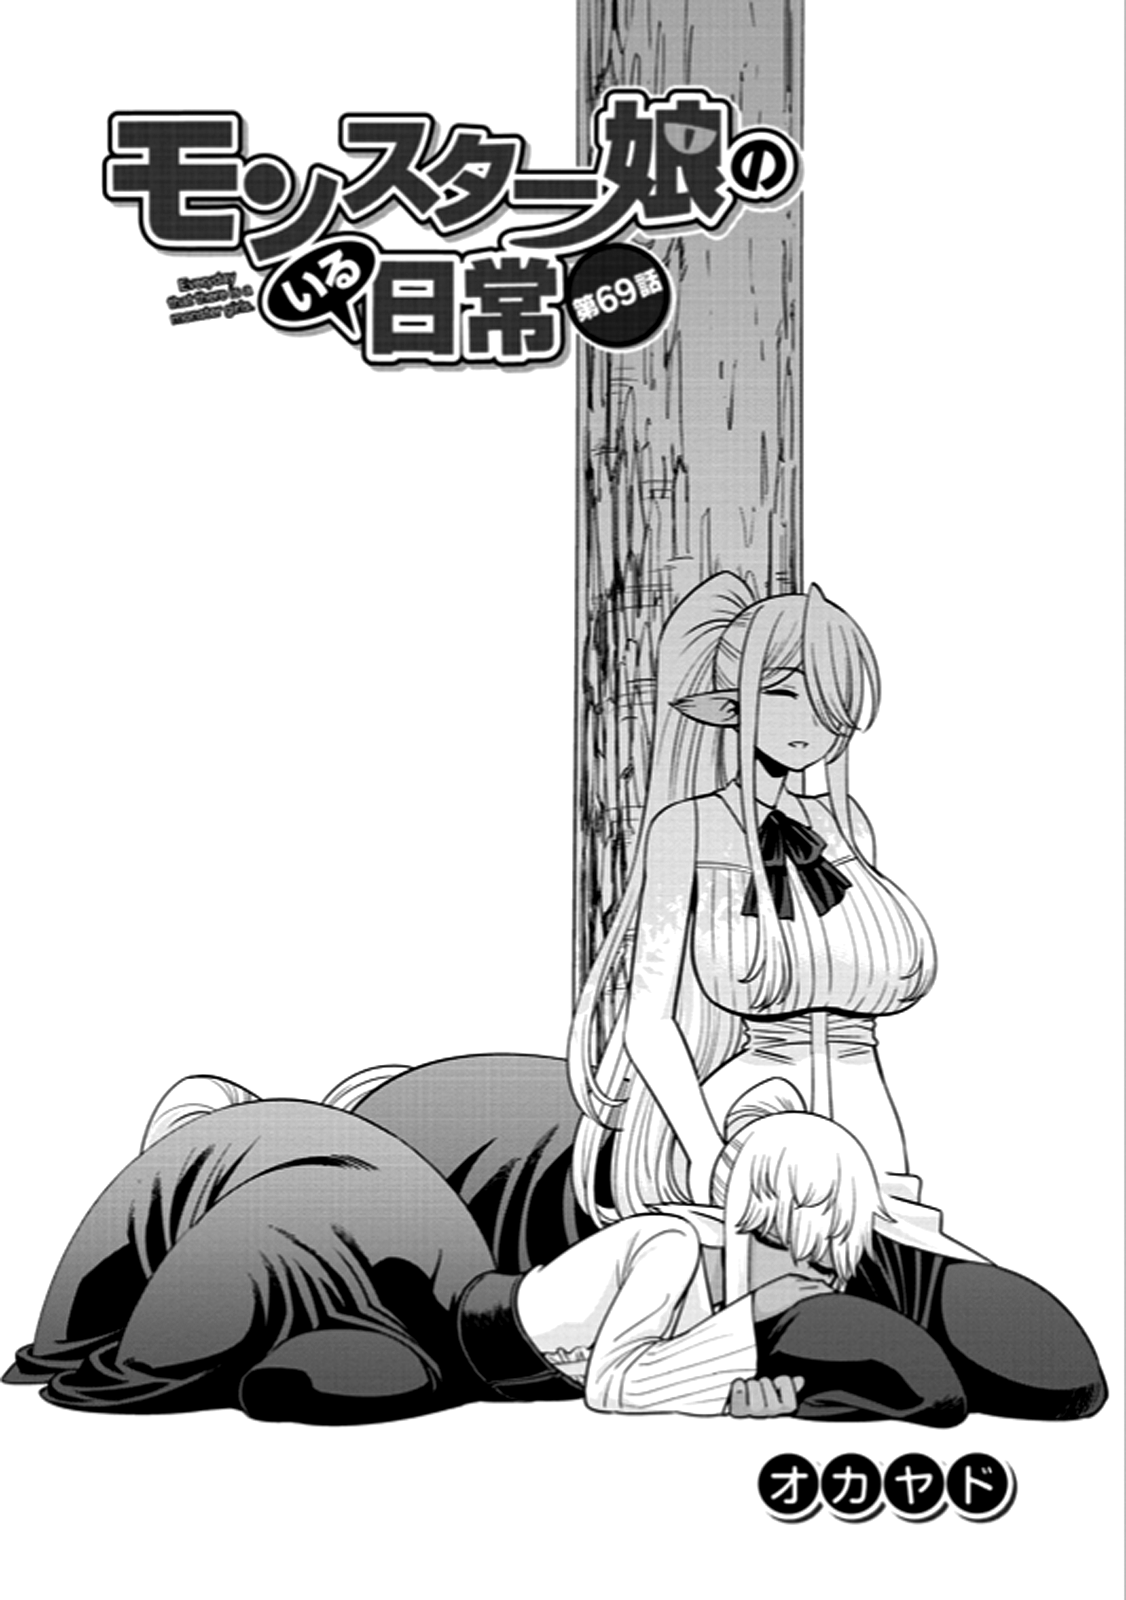 Monster Musume no Iru Nichijou - Chapter 69 Page 1